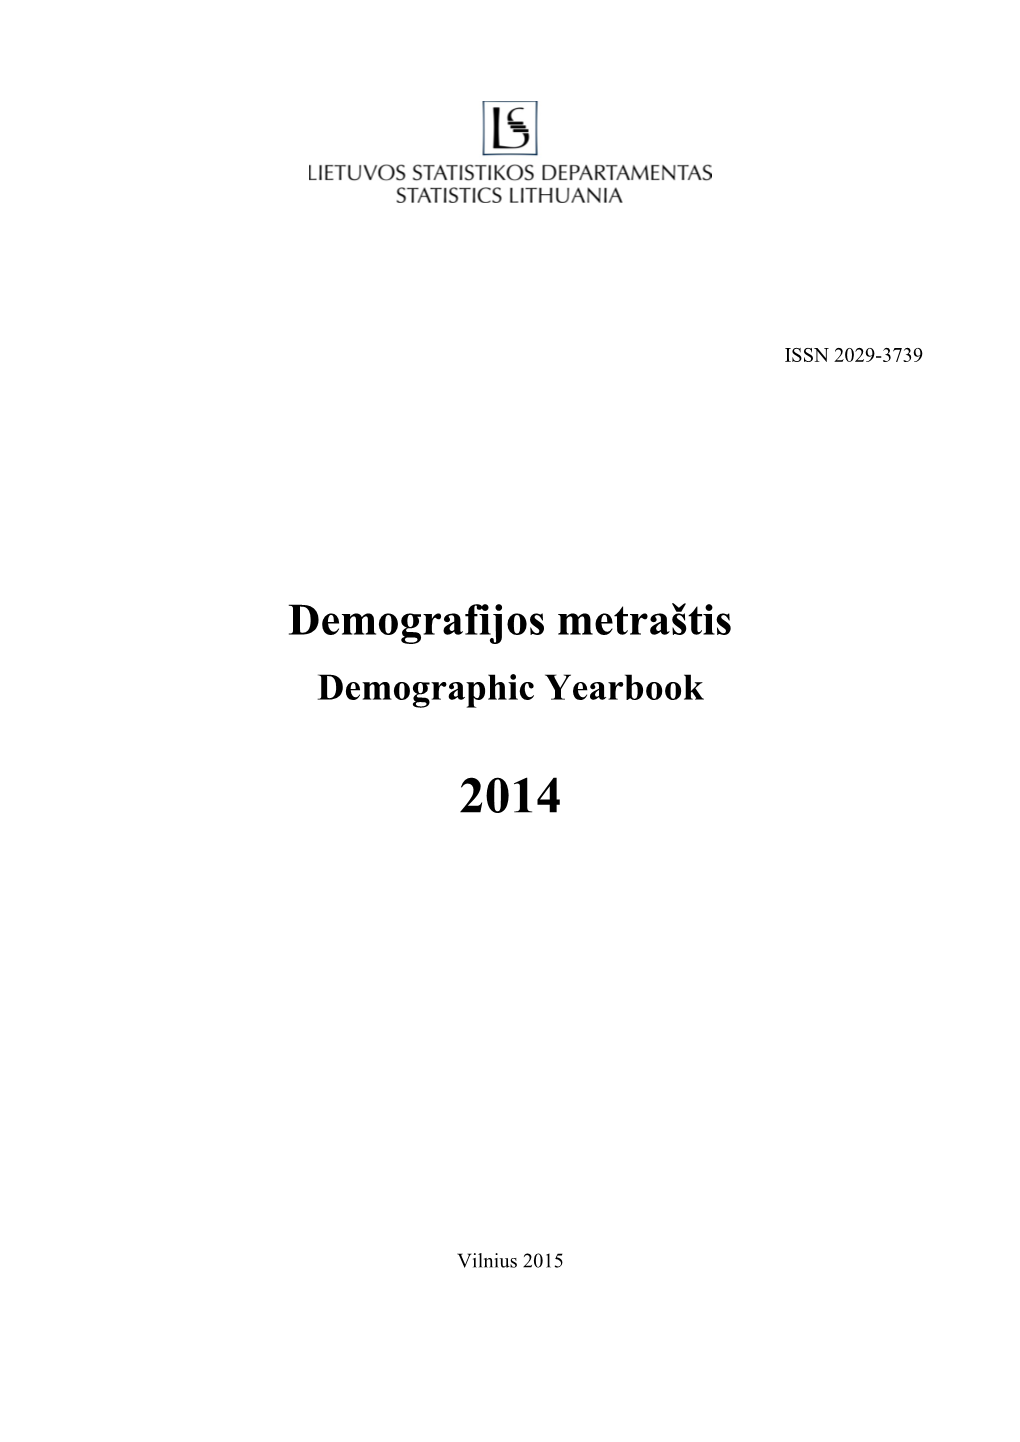 Demografijos Metraštis Demographic Yearbook